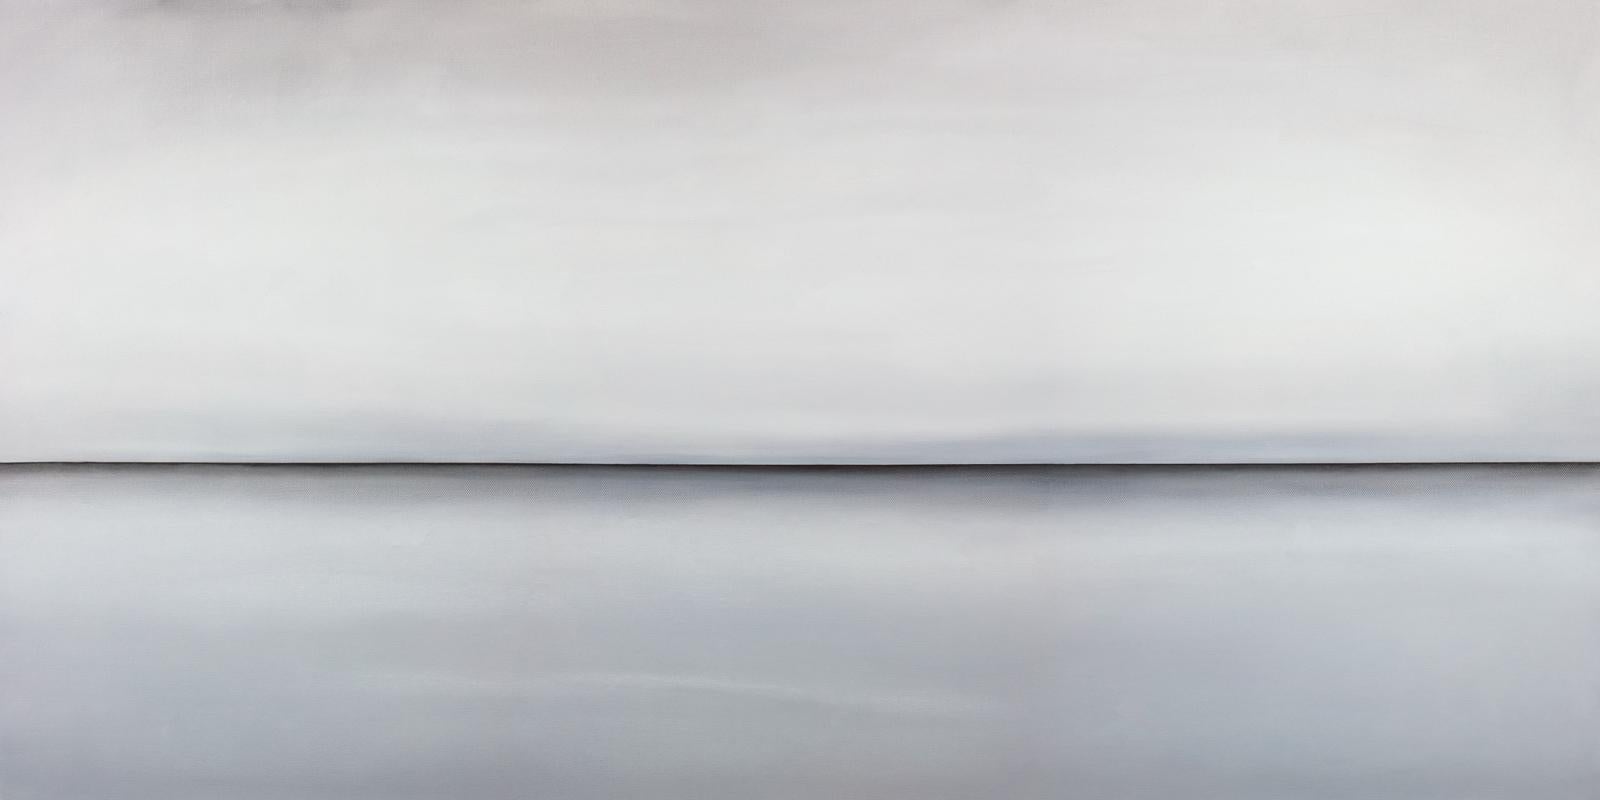 Ce paysage abstrait imprimé en édition limitée par Tony Iadicicco se caractérise par une palette de gris clairs. Il s'agit d'une composition paysagère abstraite, avec une ligne d'horizon marquée qui traverse la composition et des tons gris doux et